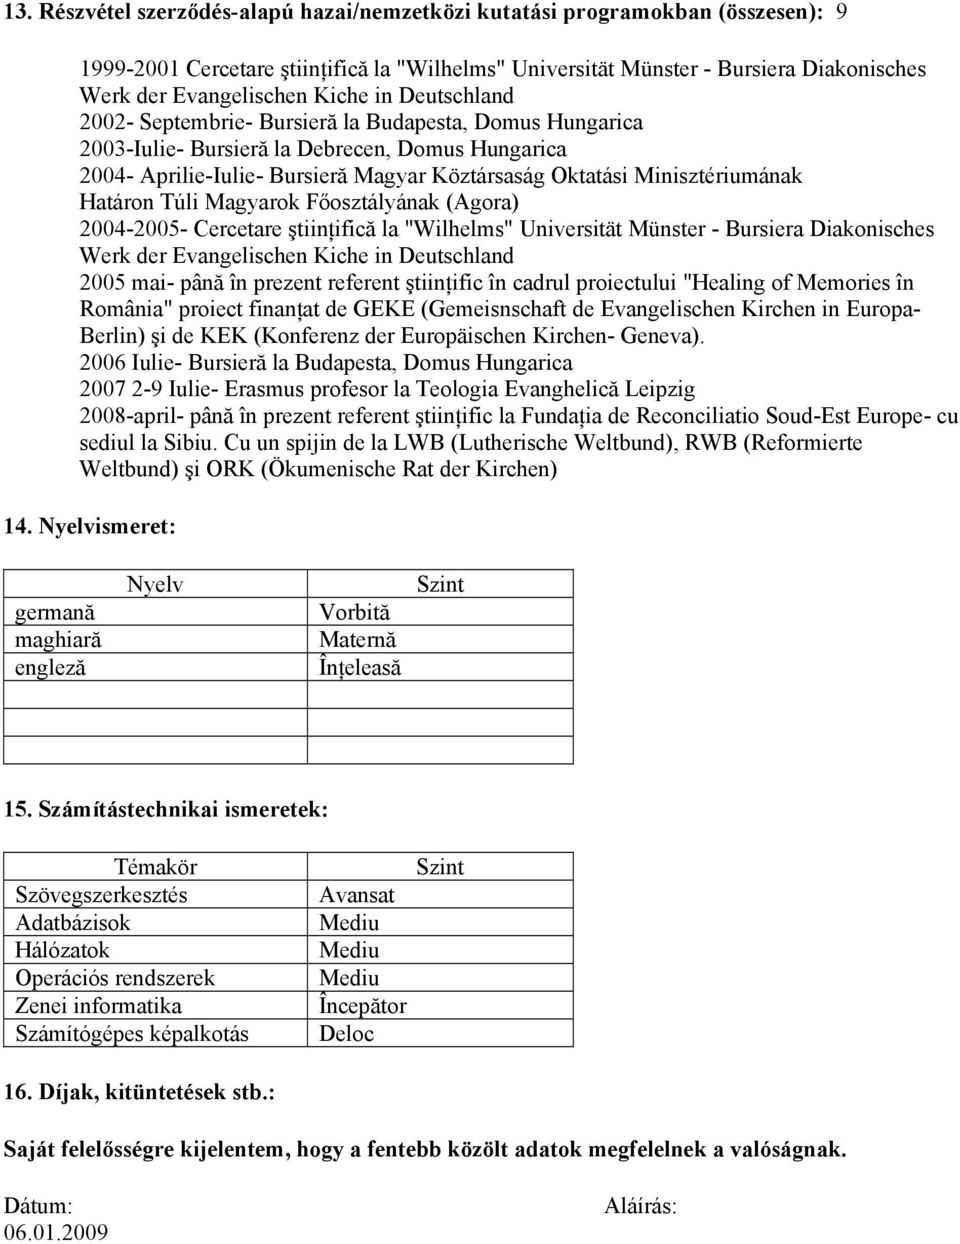 Minisztériumának Határon Túli Magyarok Főosztályának (Agora) 2004-2005- Cercetare ştiinţifică la "Wilhelms" Universität Münster - Bursiera Diakonisches Werk der Evangelischen Kiche in Deutschland